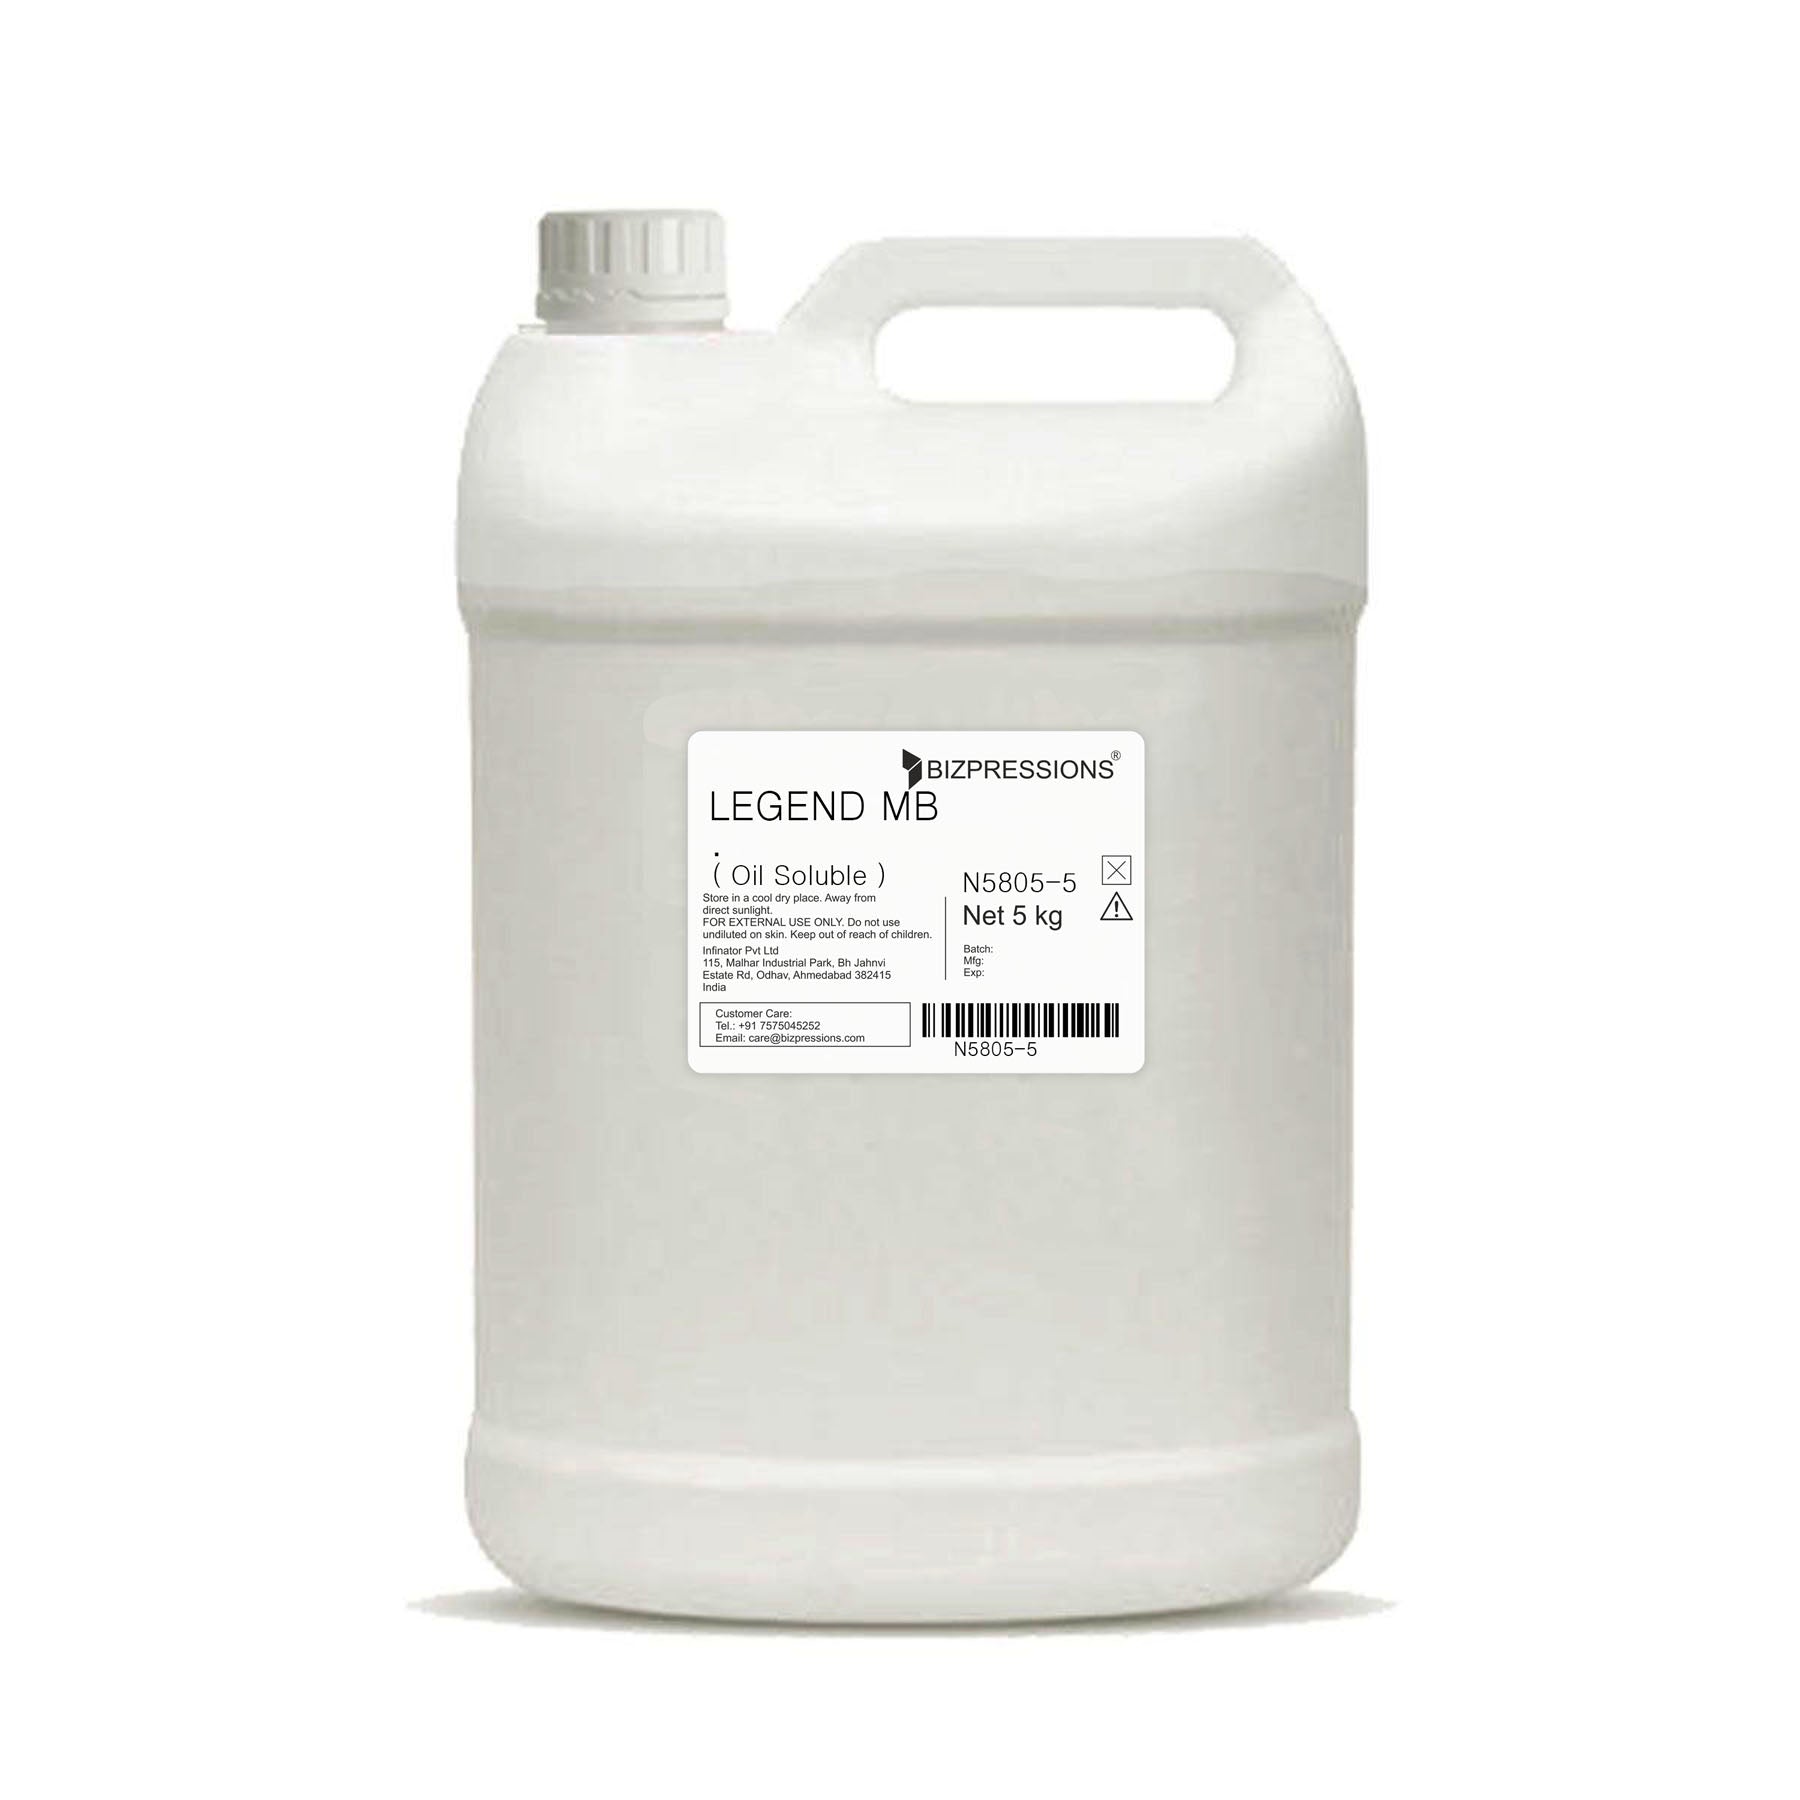 LEGEND MB - Fragrance ( Oil Soluble ) - 5 kg